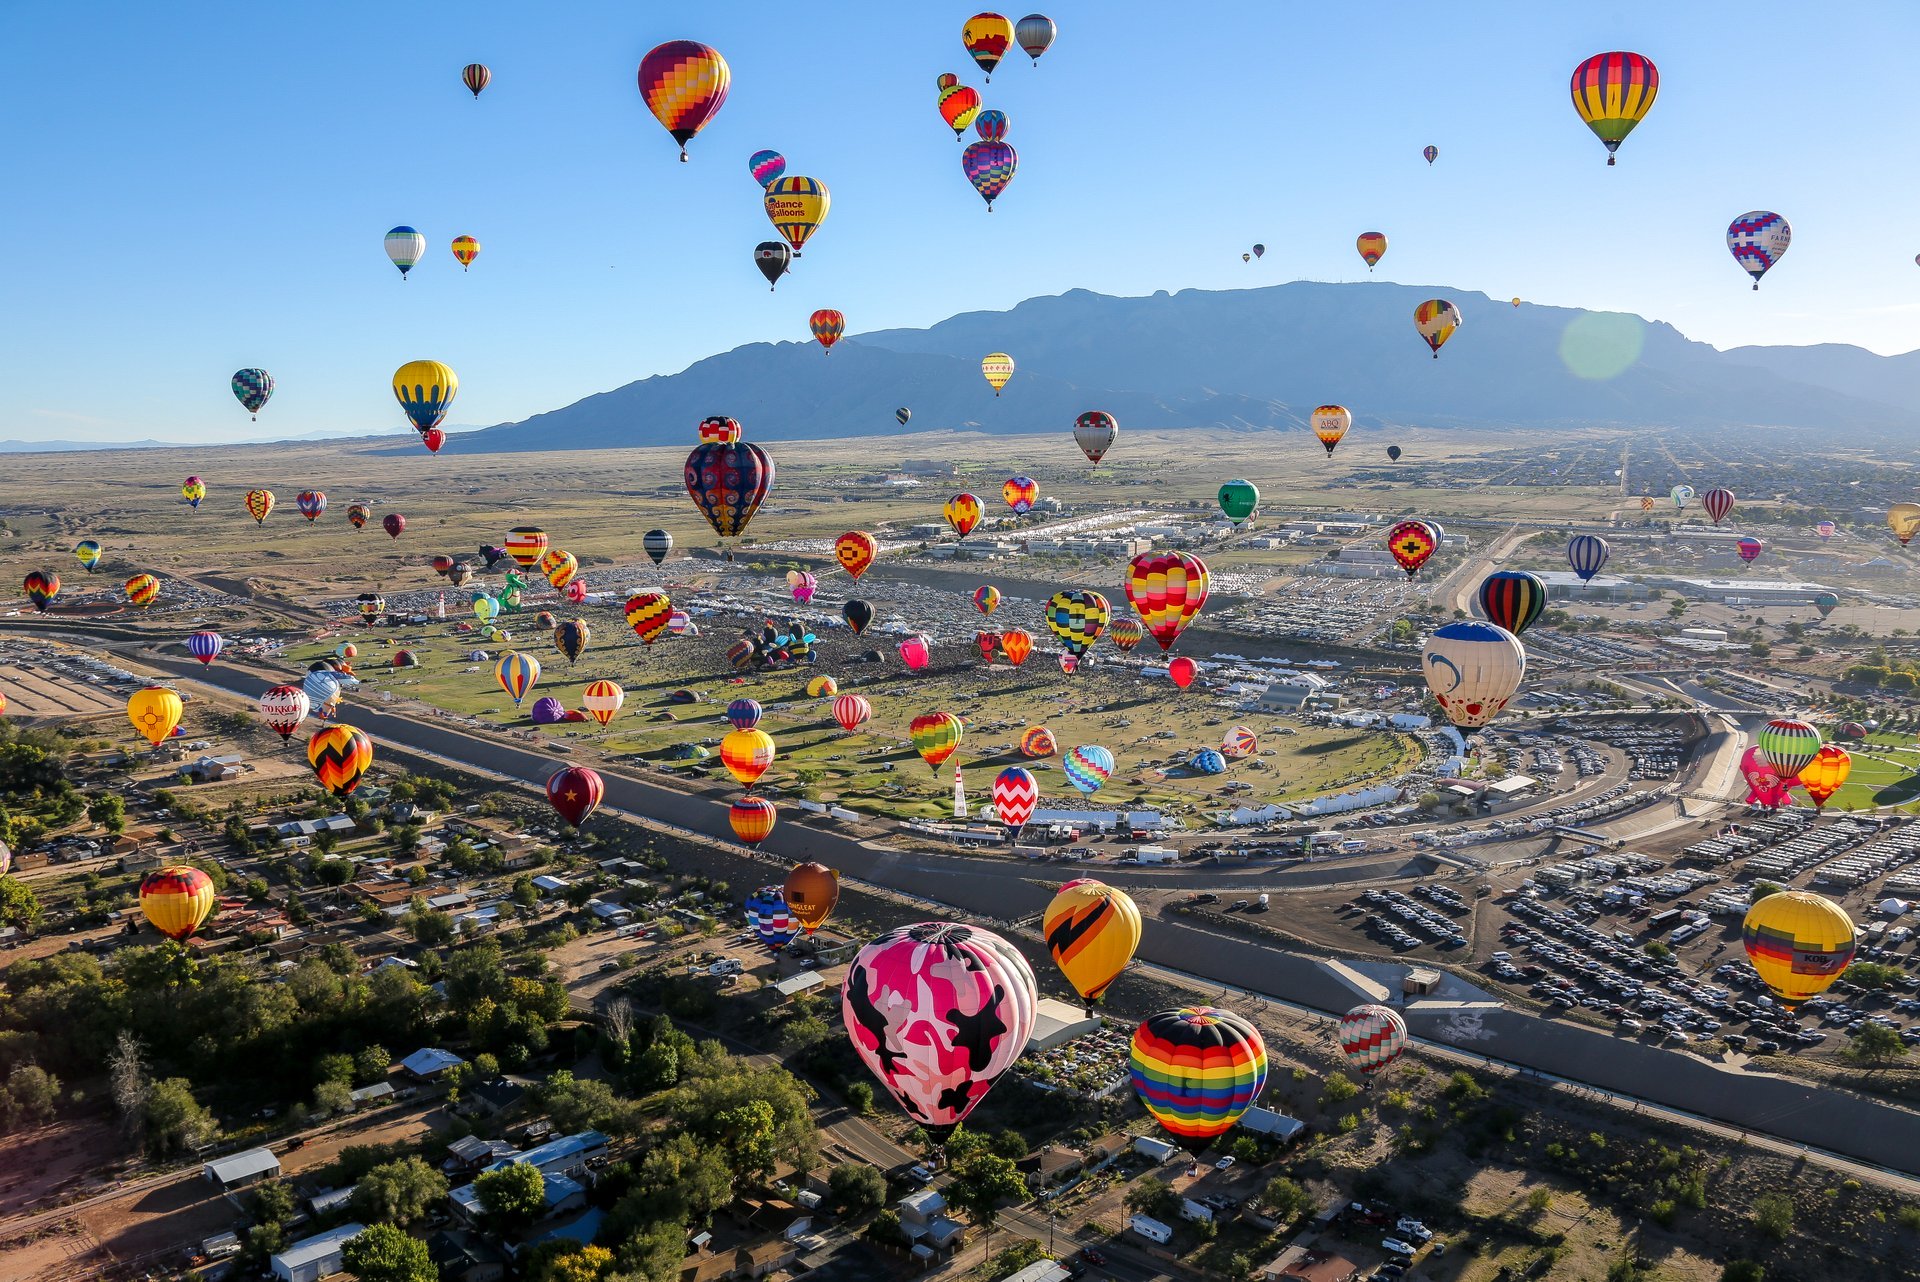 Albuquerque International Balloon Fiesta, New Mexico